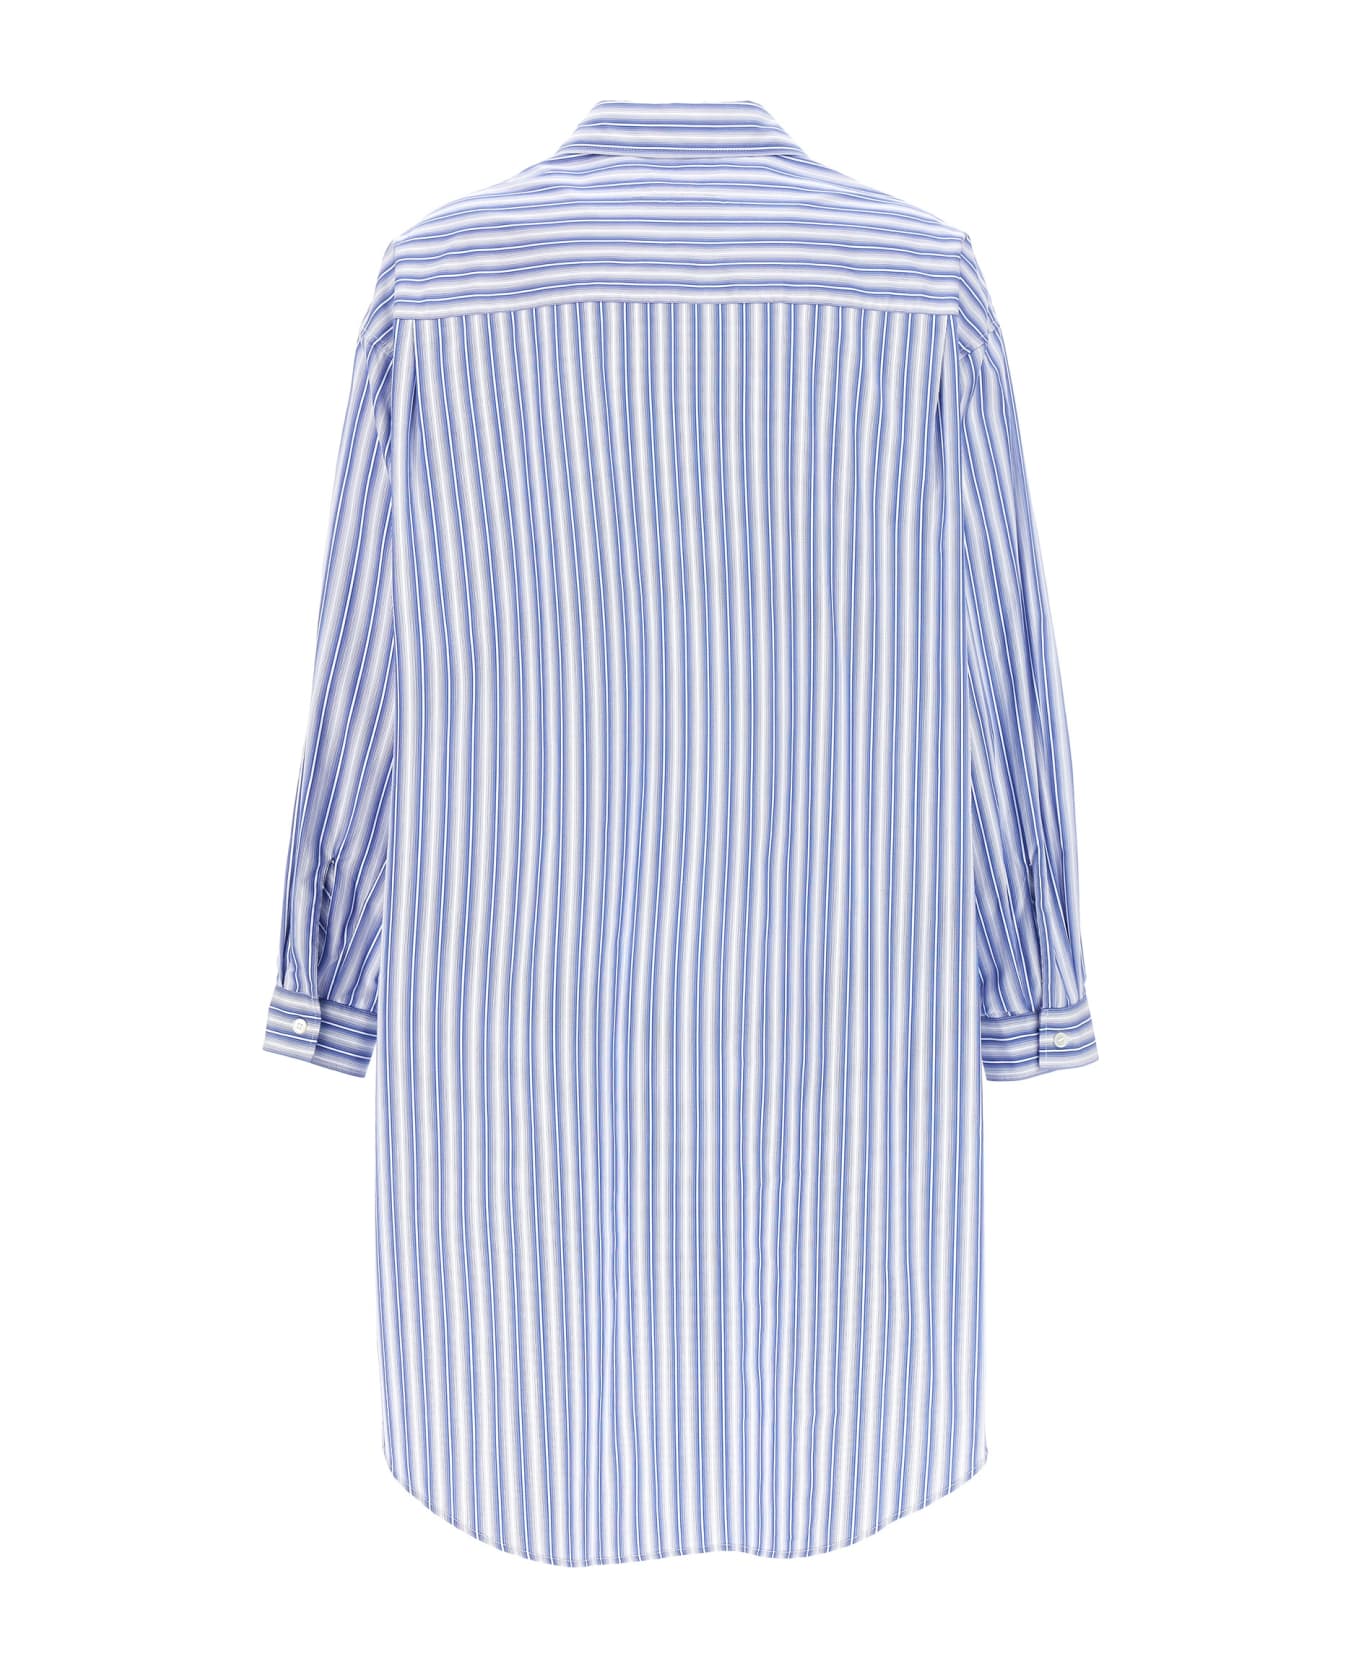 MM6 Maison Margiela Striped Shirt - BLUE/WHITE シャツ